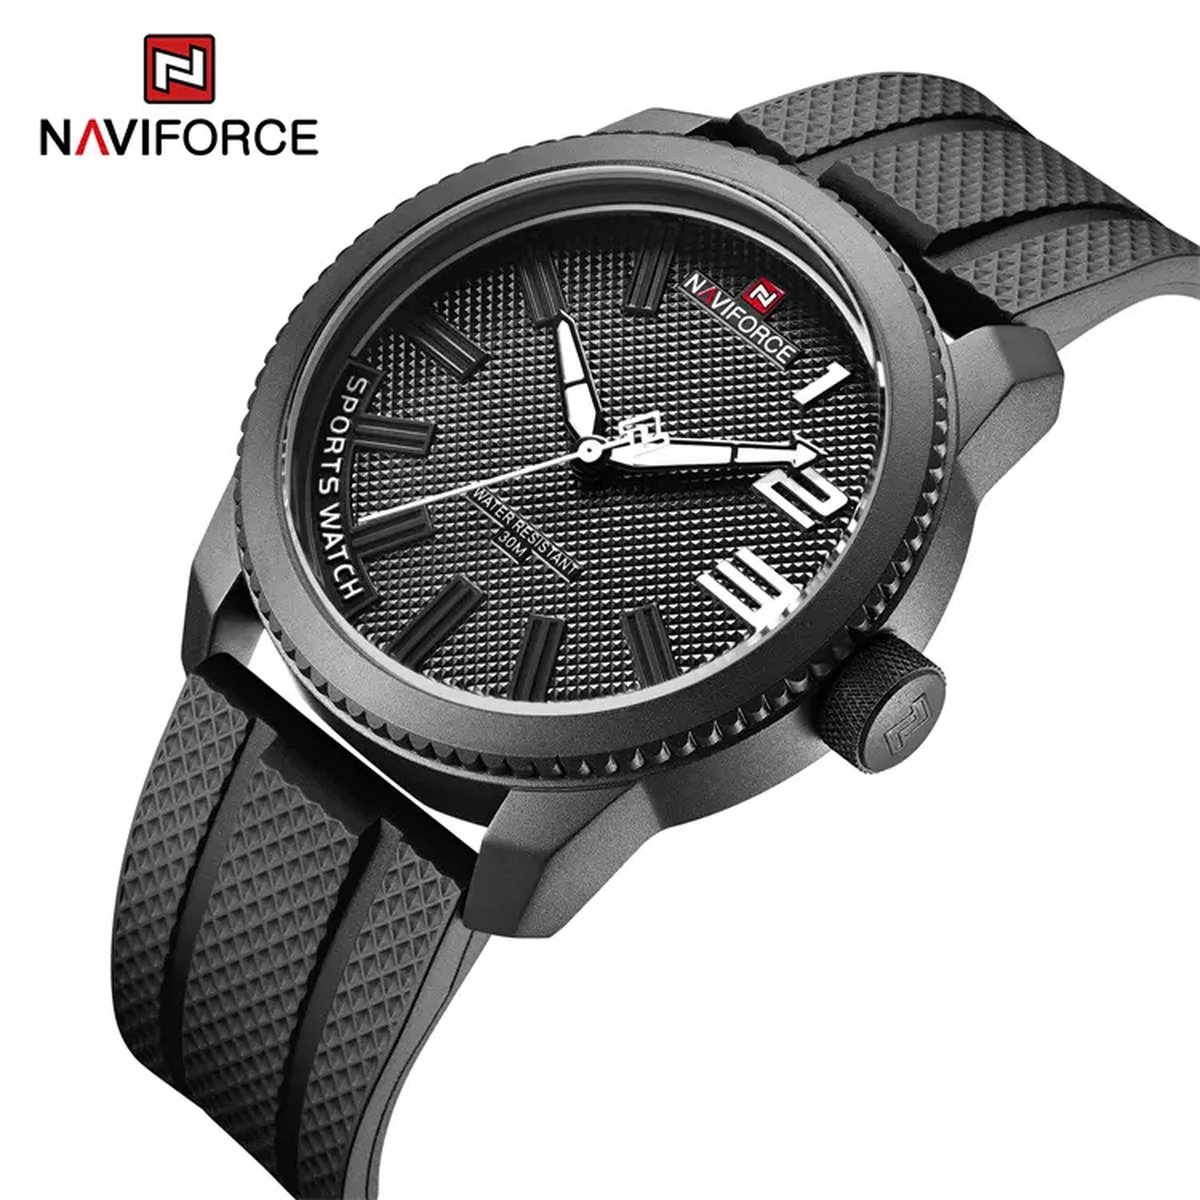 NAVIFORCE horloge voor mannen, met zwarte TPU polsband, zwarte uurwerkkast en wijzerplaat met witte wijzers ( model 9202T BWB ), verpakt in mooie geschenkdoos